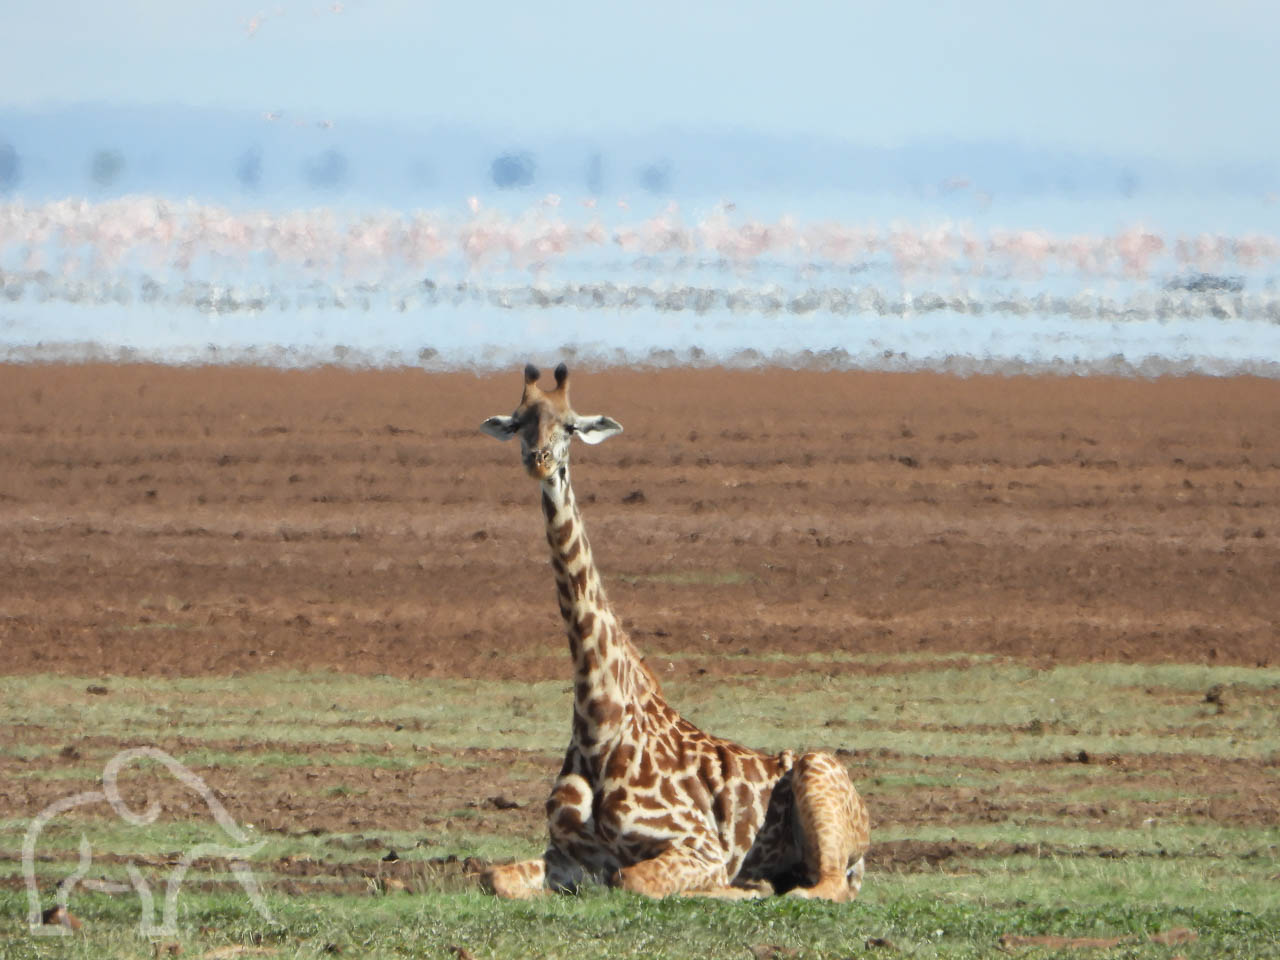 grappig een liggende giraf met zijn lange nek en hoofd nog omhoog aan de oever van lake manyara met daarin veel vogels